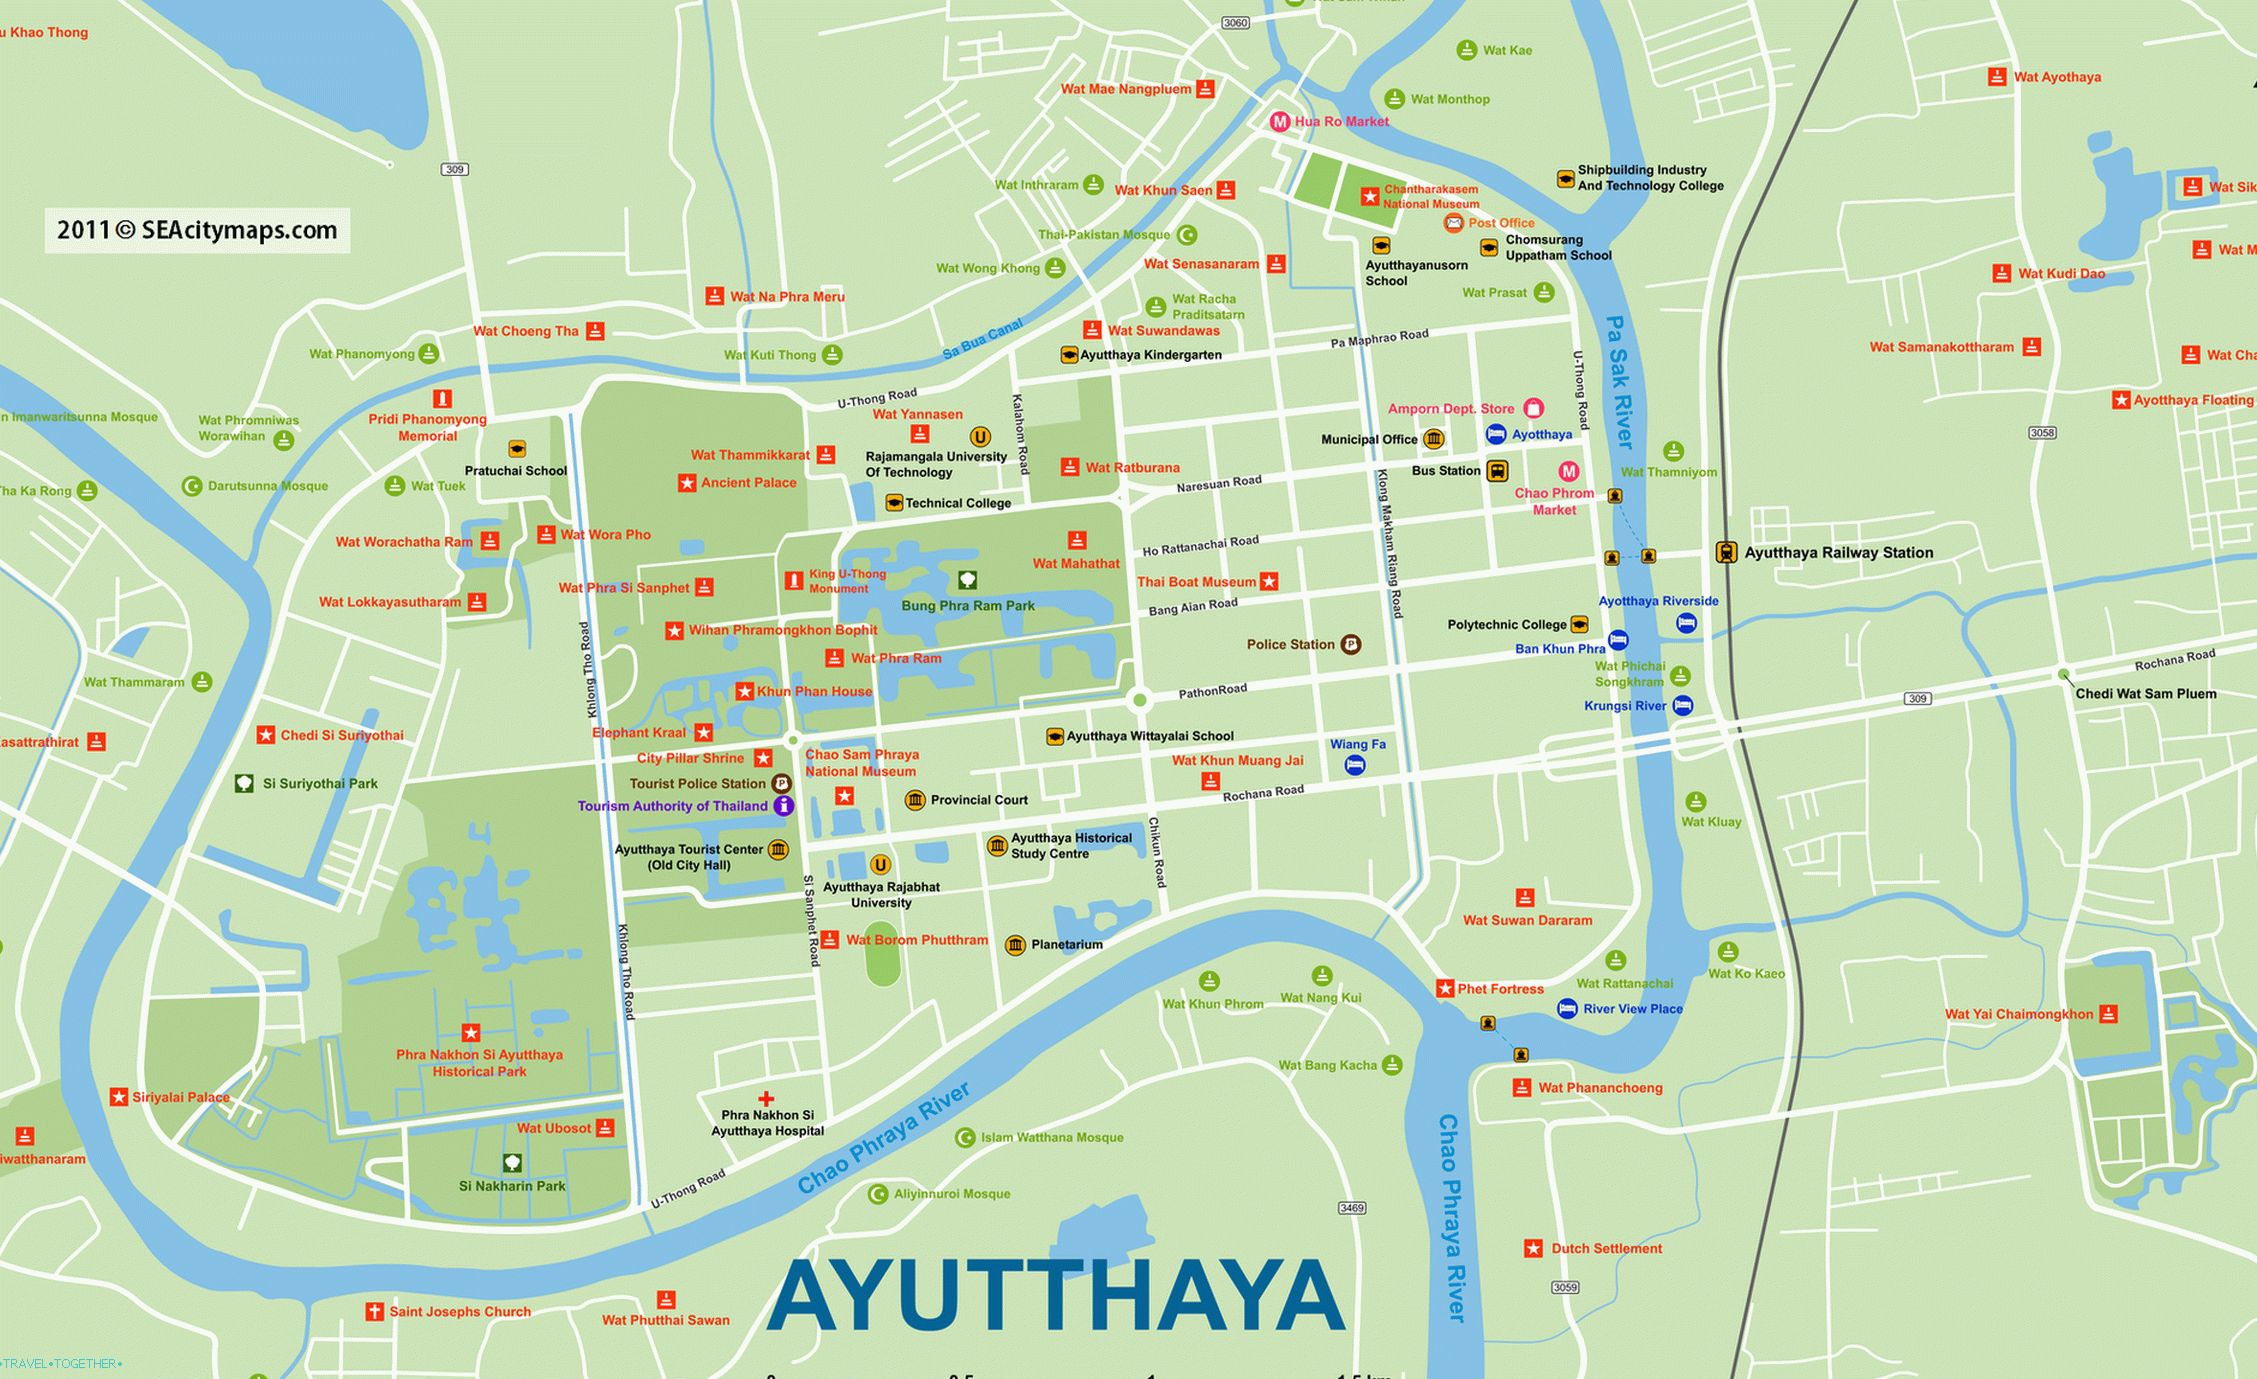 Карта Аиуттаи са свим храмовима (на великом клику)